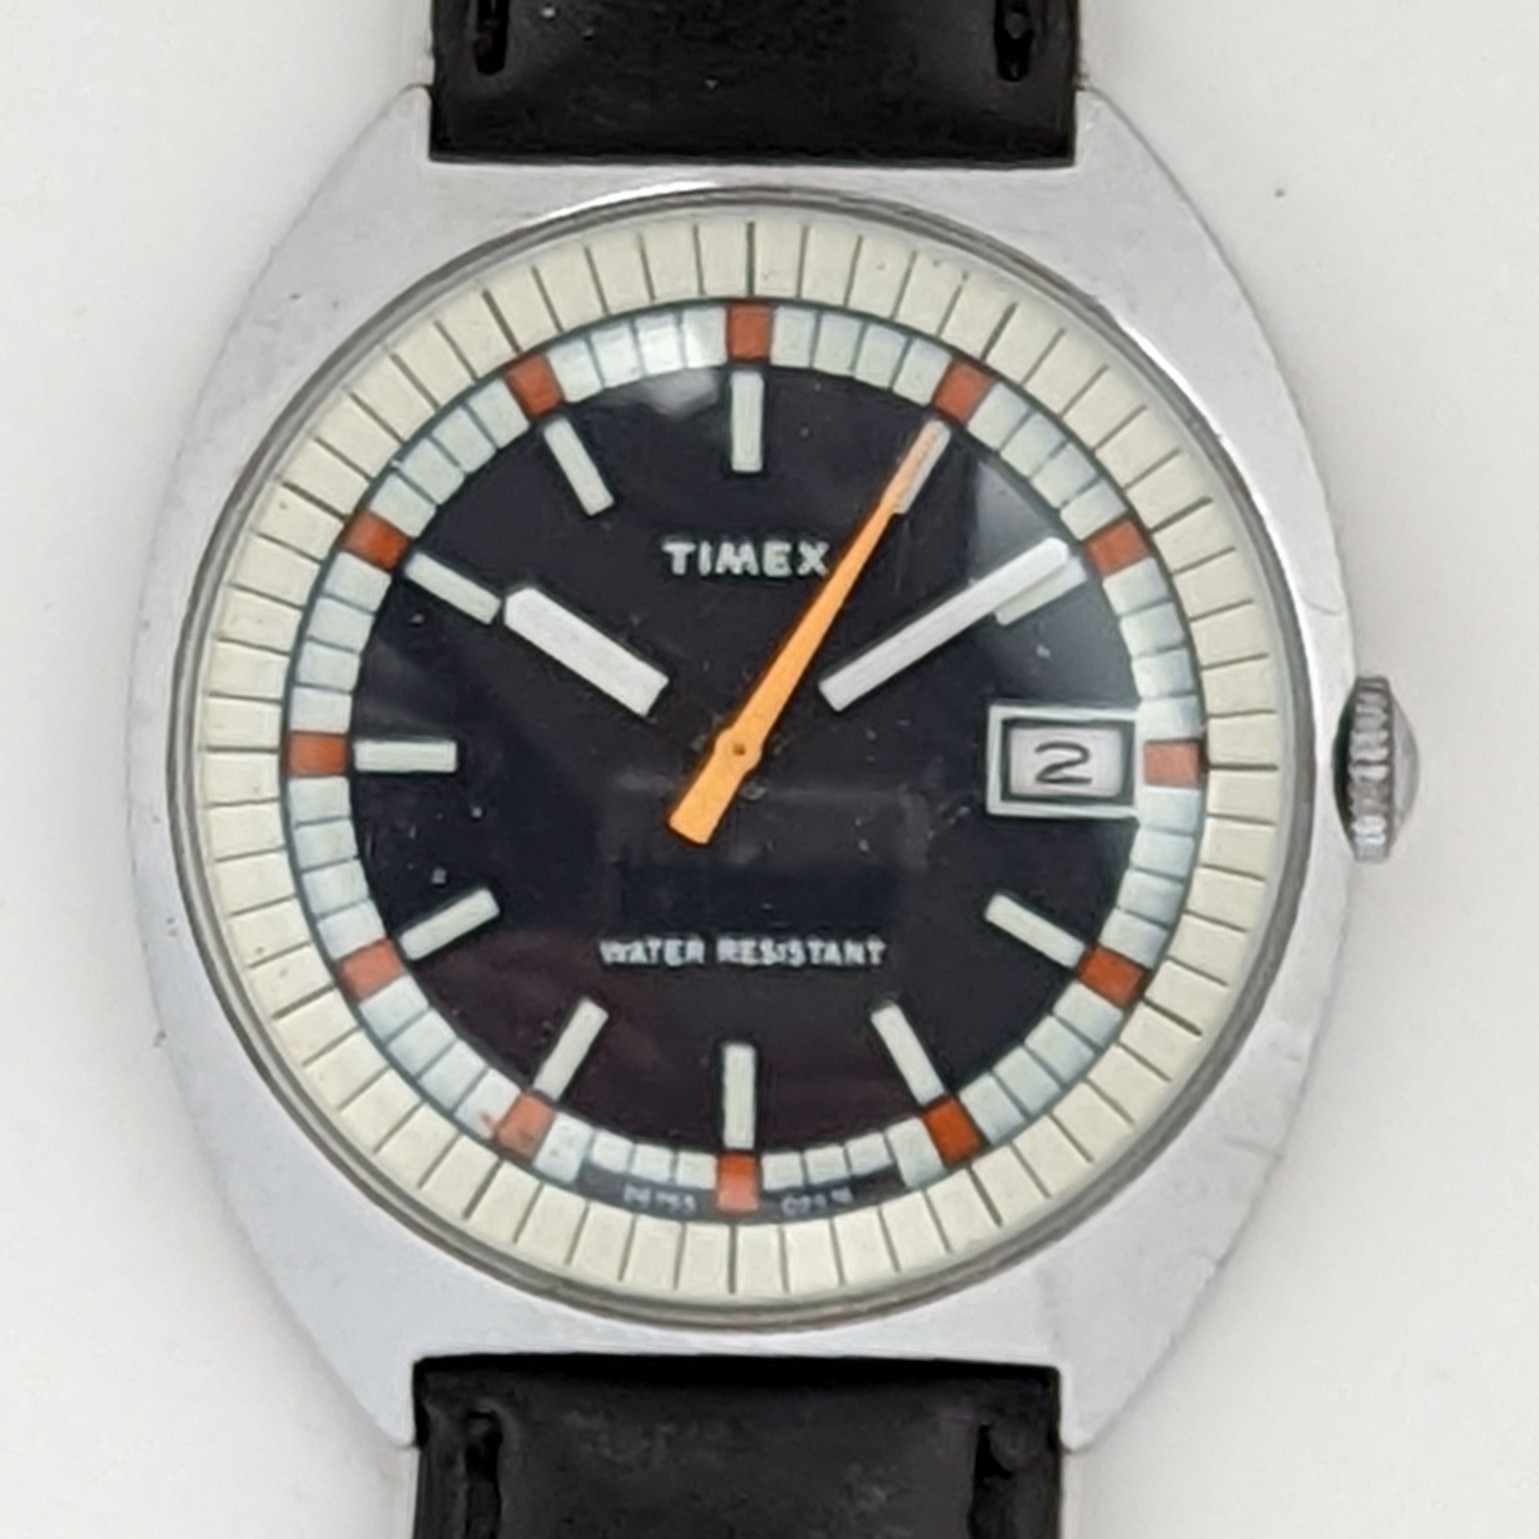 Timex Marlin 26753 02574 [1974]